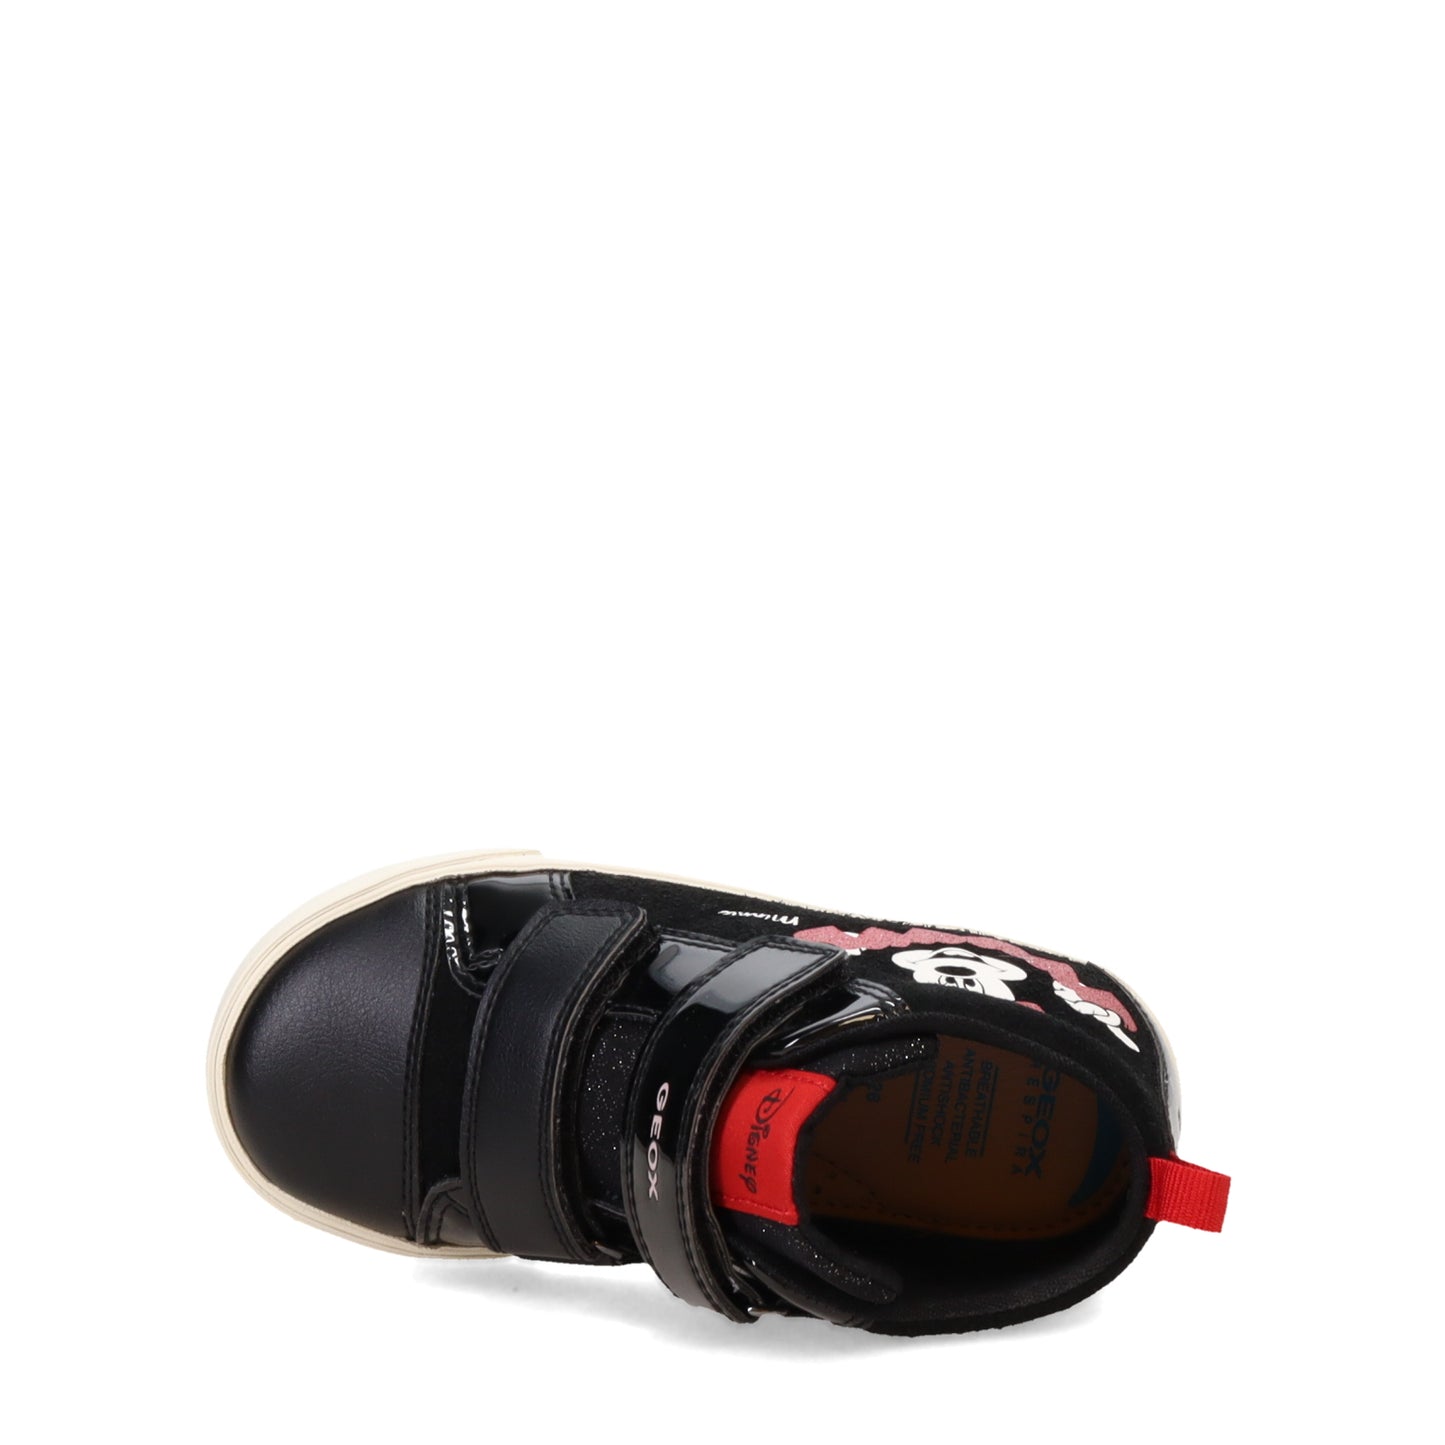 Peltz Shoes  Girl’s Geox DISNEY Kilwi Sneaker – Toddler Black/Red B36D5D022HHC0048